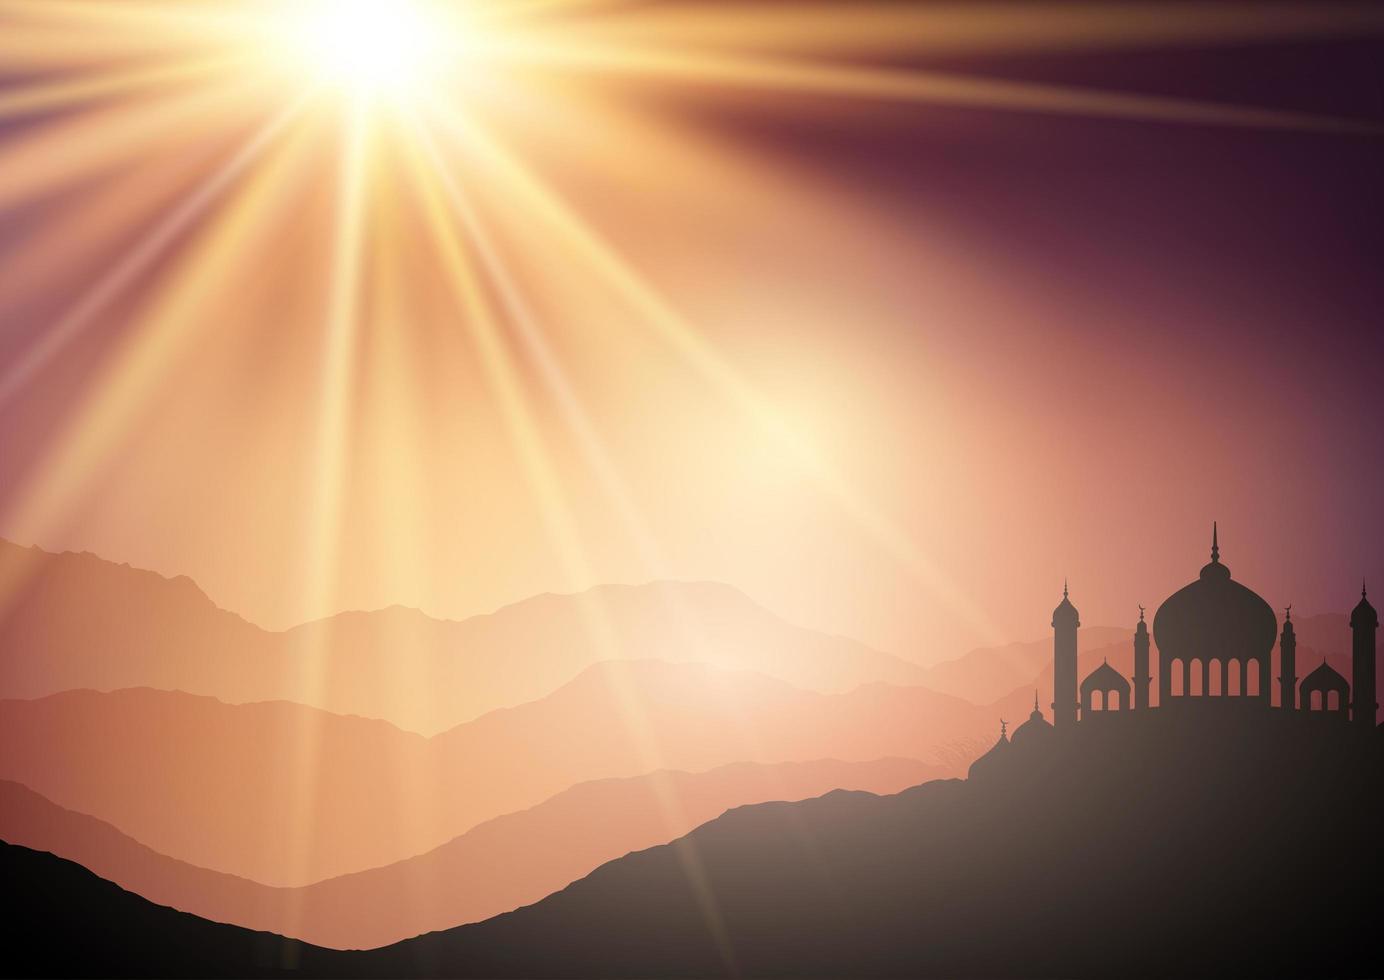 landskapsbakgrund med moskéer mot solnedgångshimmel vektor